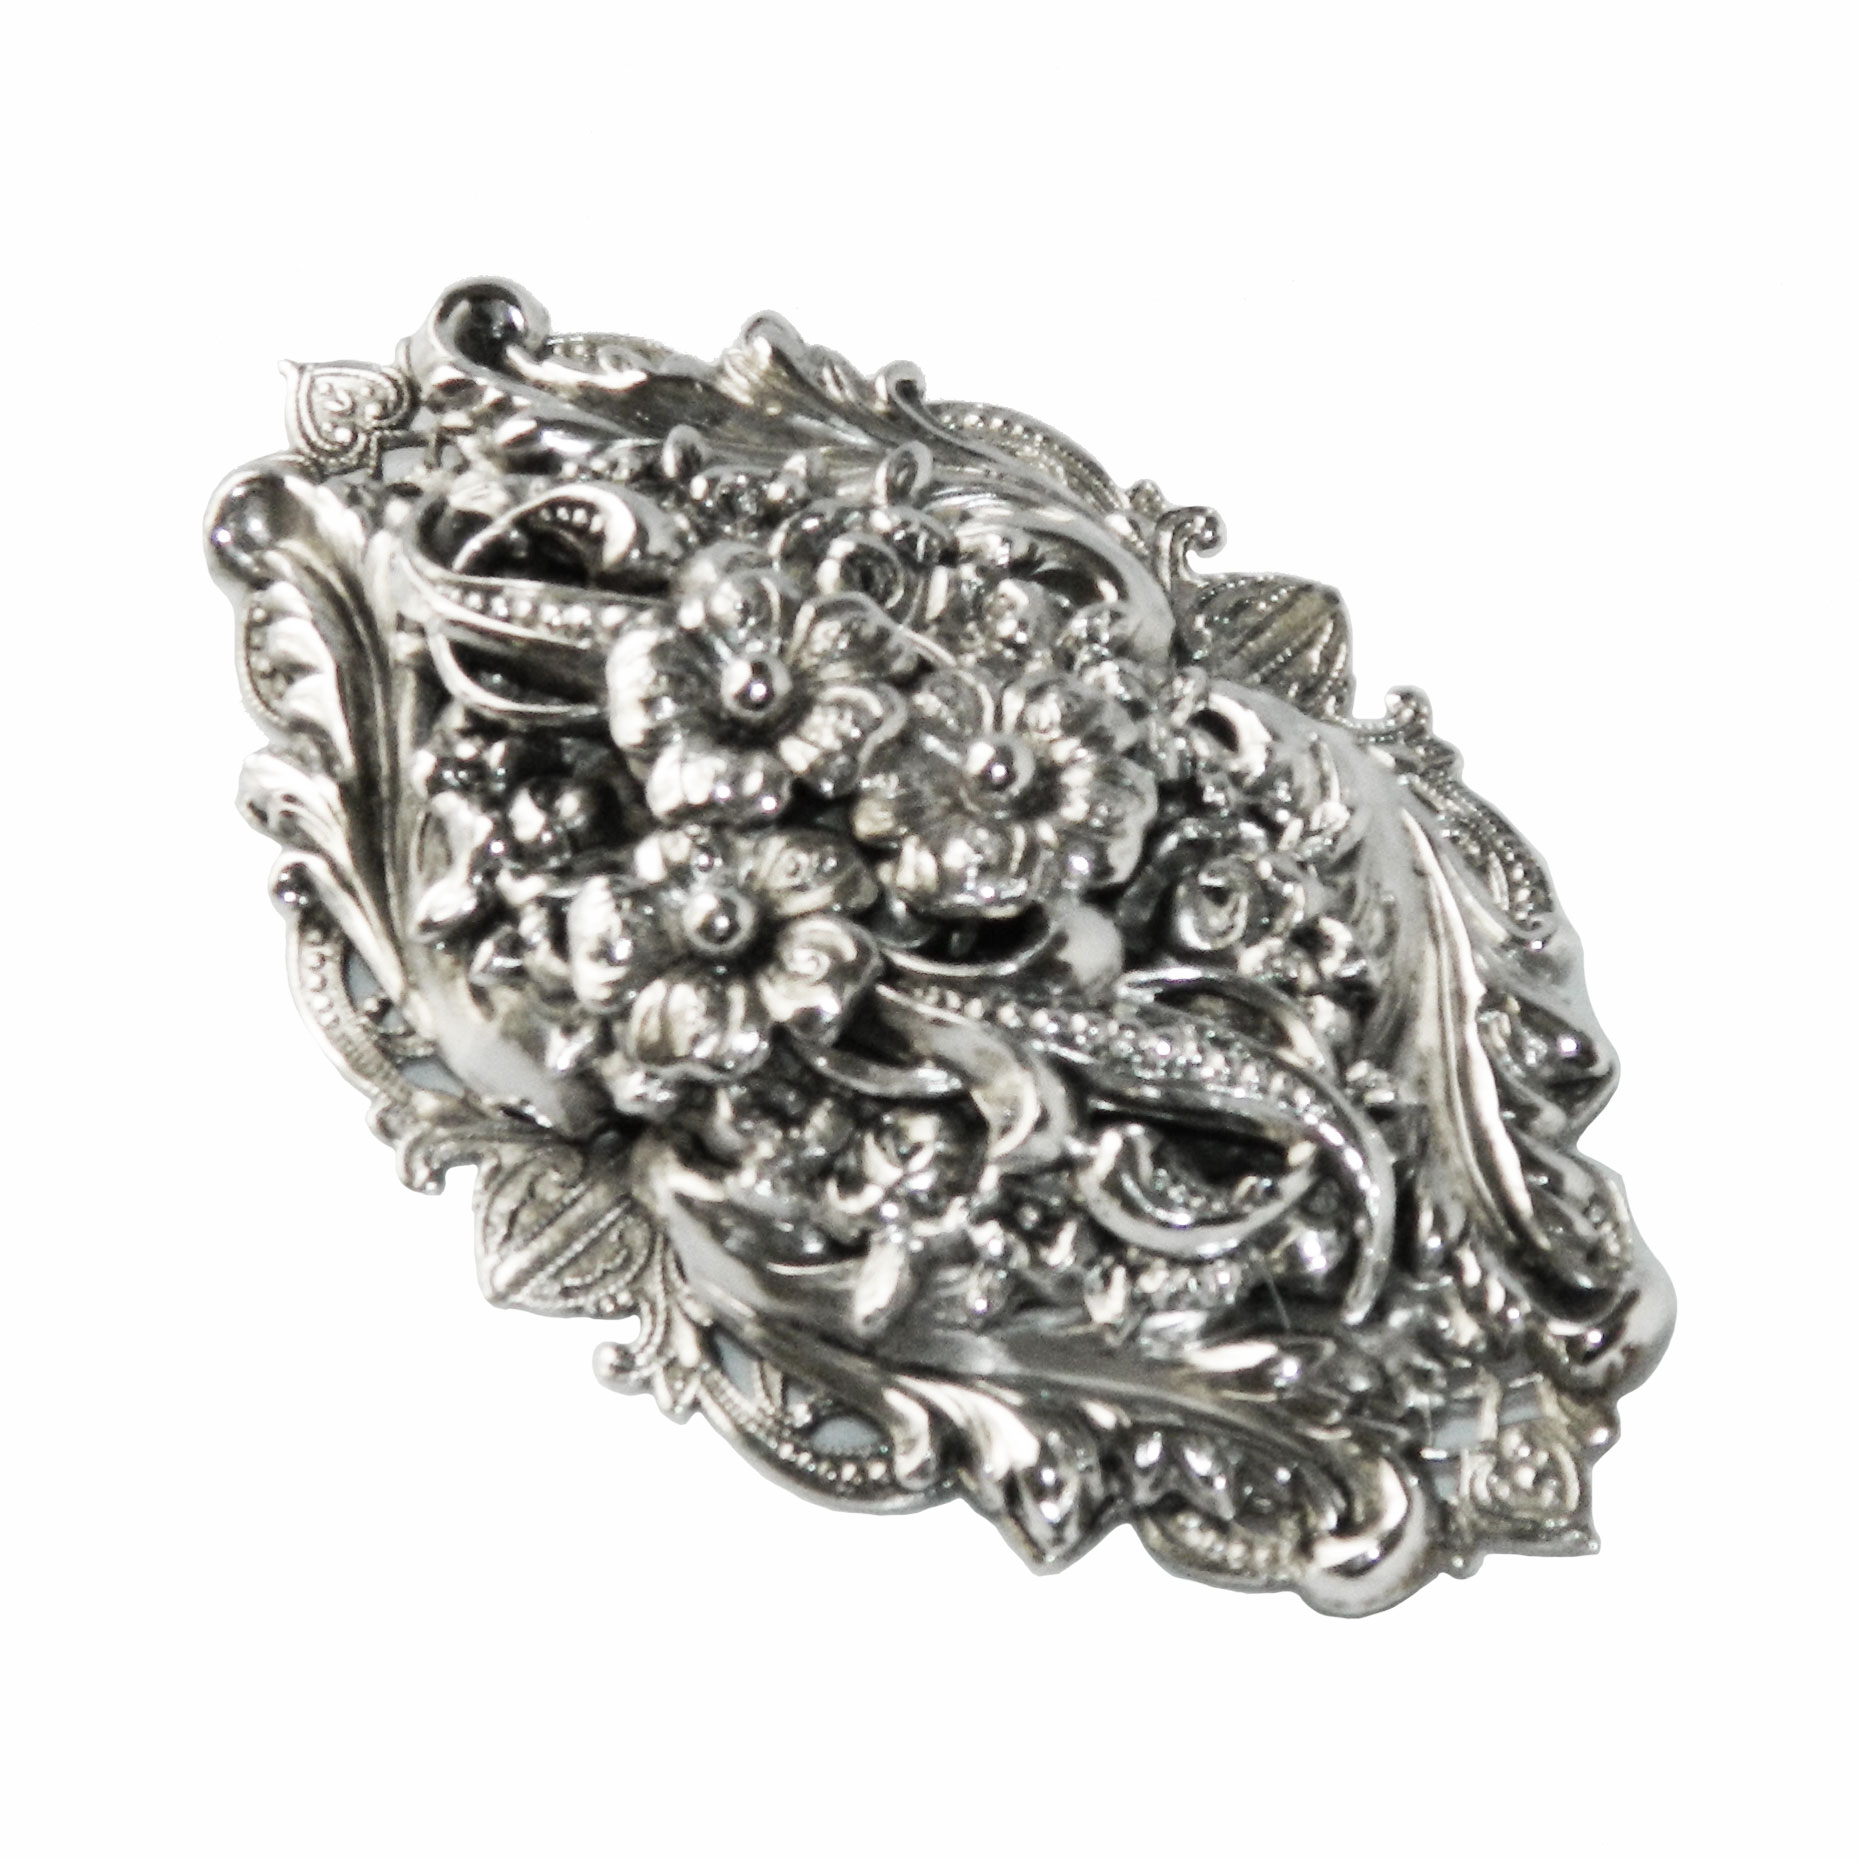 Silver metal floral brooch